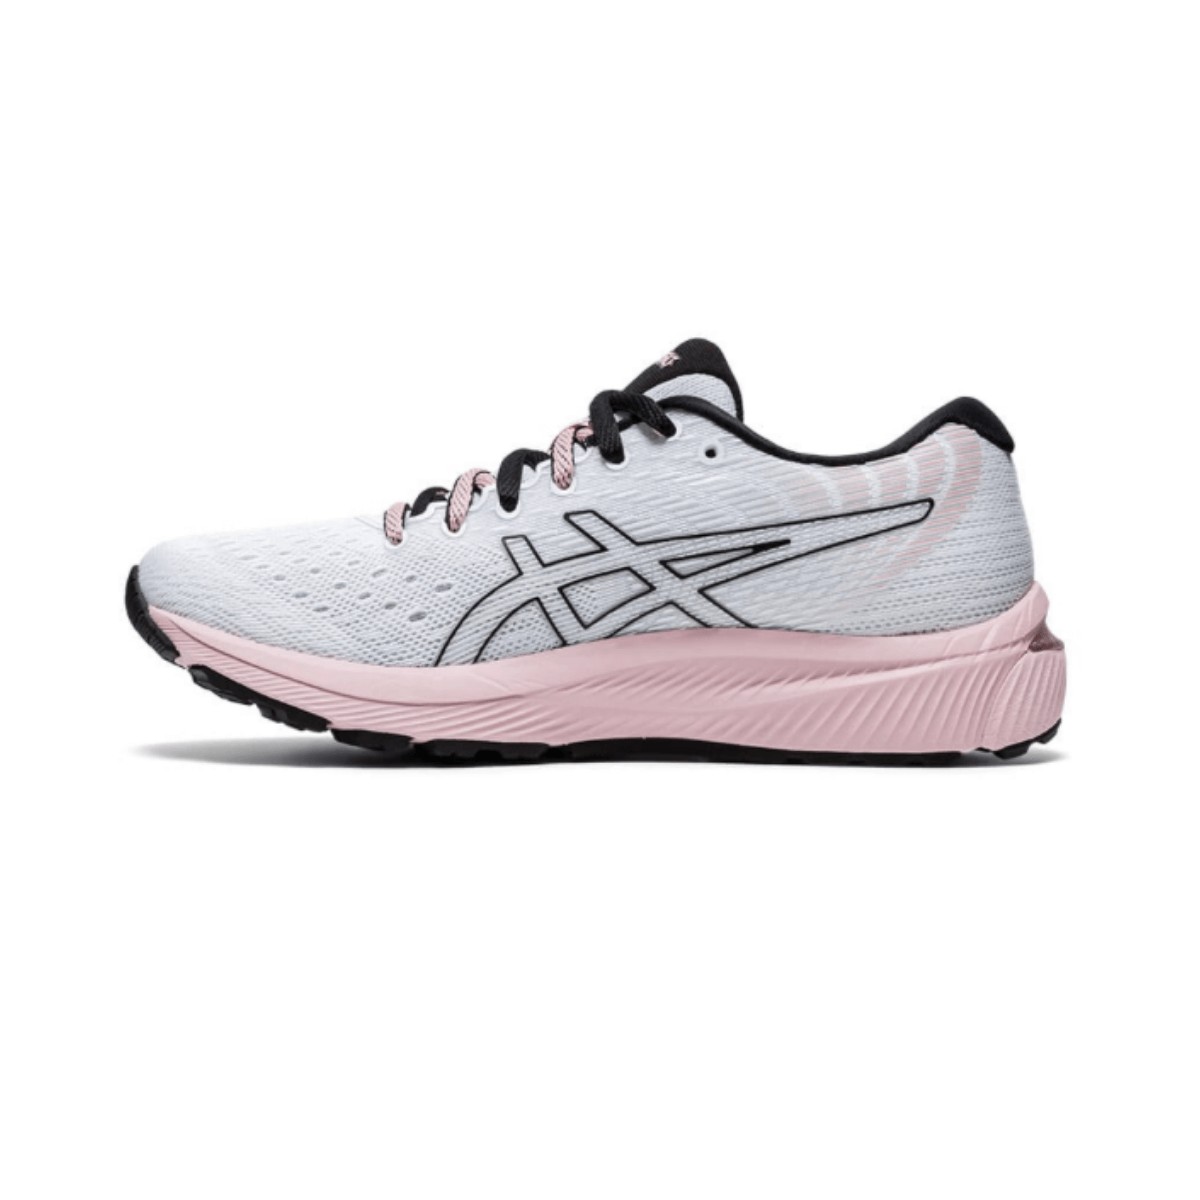 Asics Gel-Cumulus 22 White Pink AW20 Women's Running Shoes